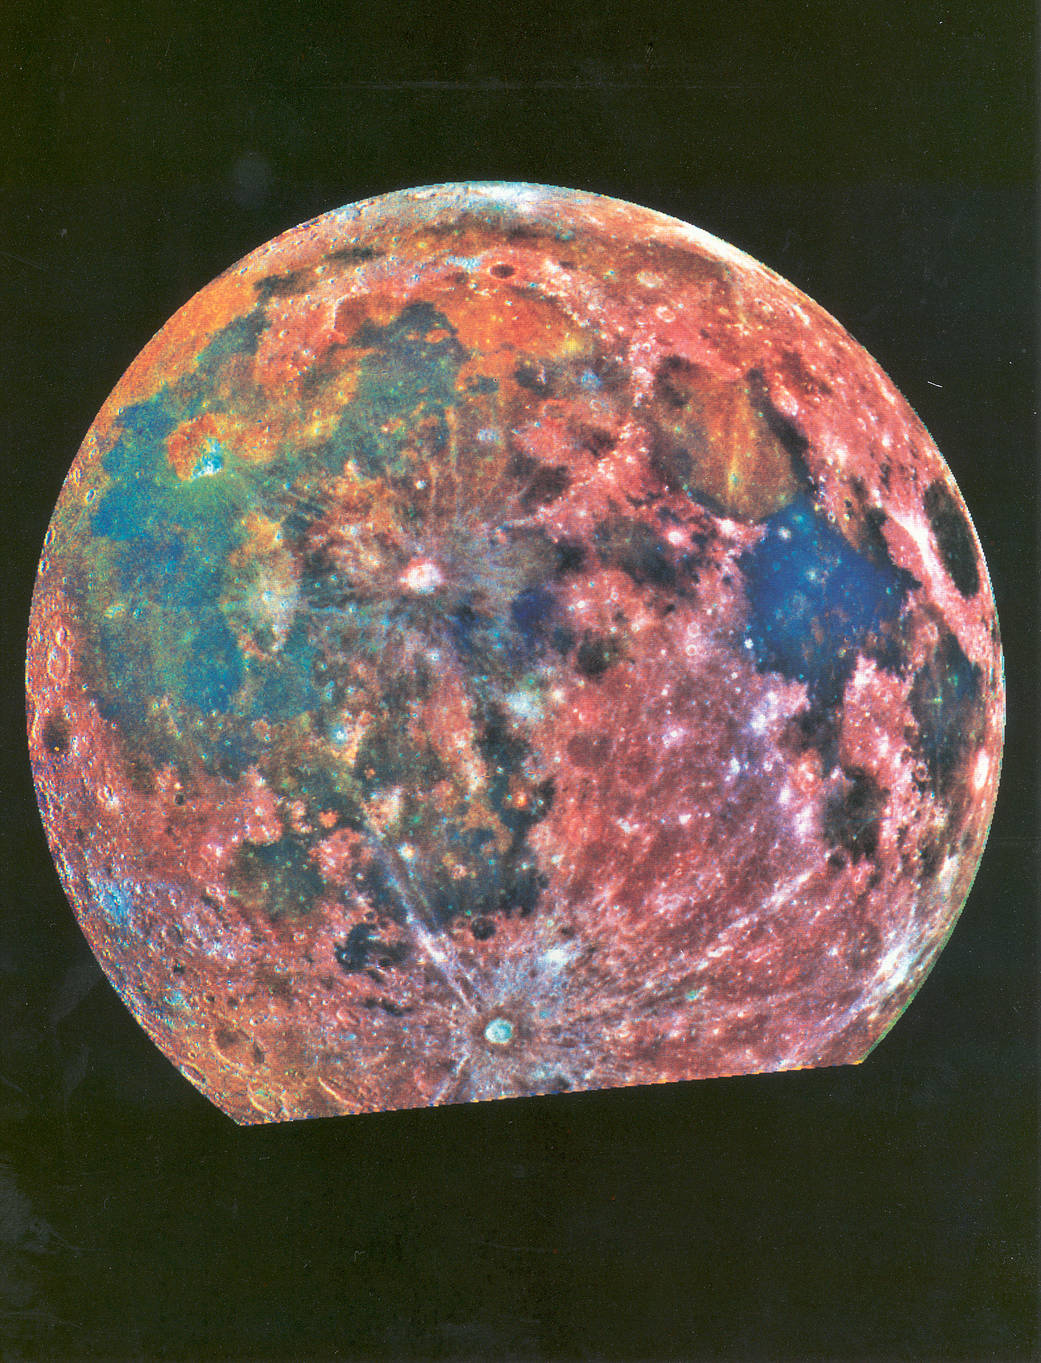 False-color image of Earth's Moon